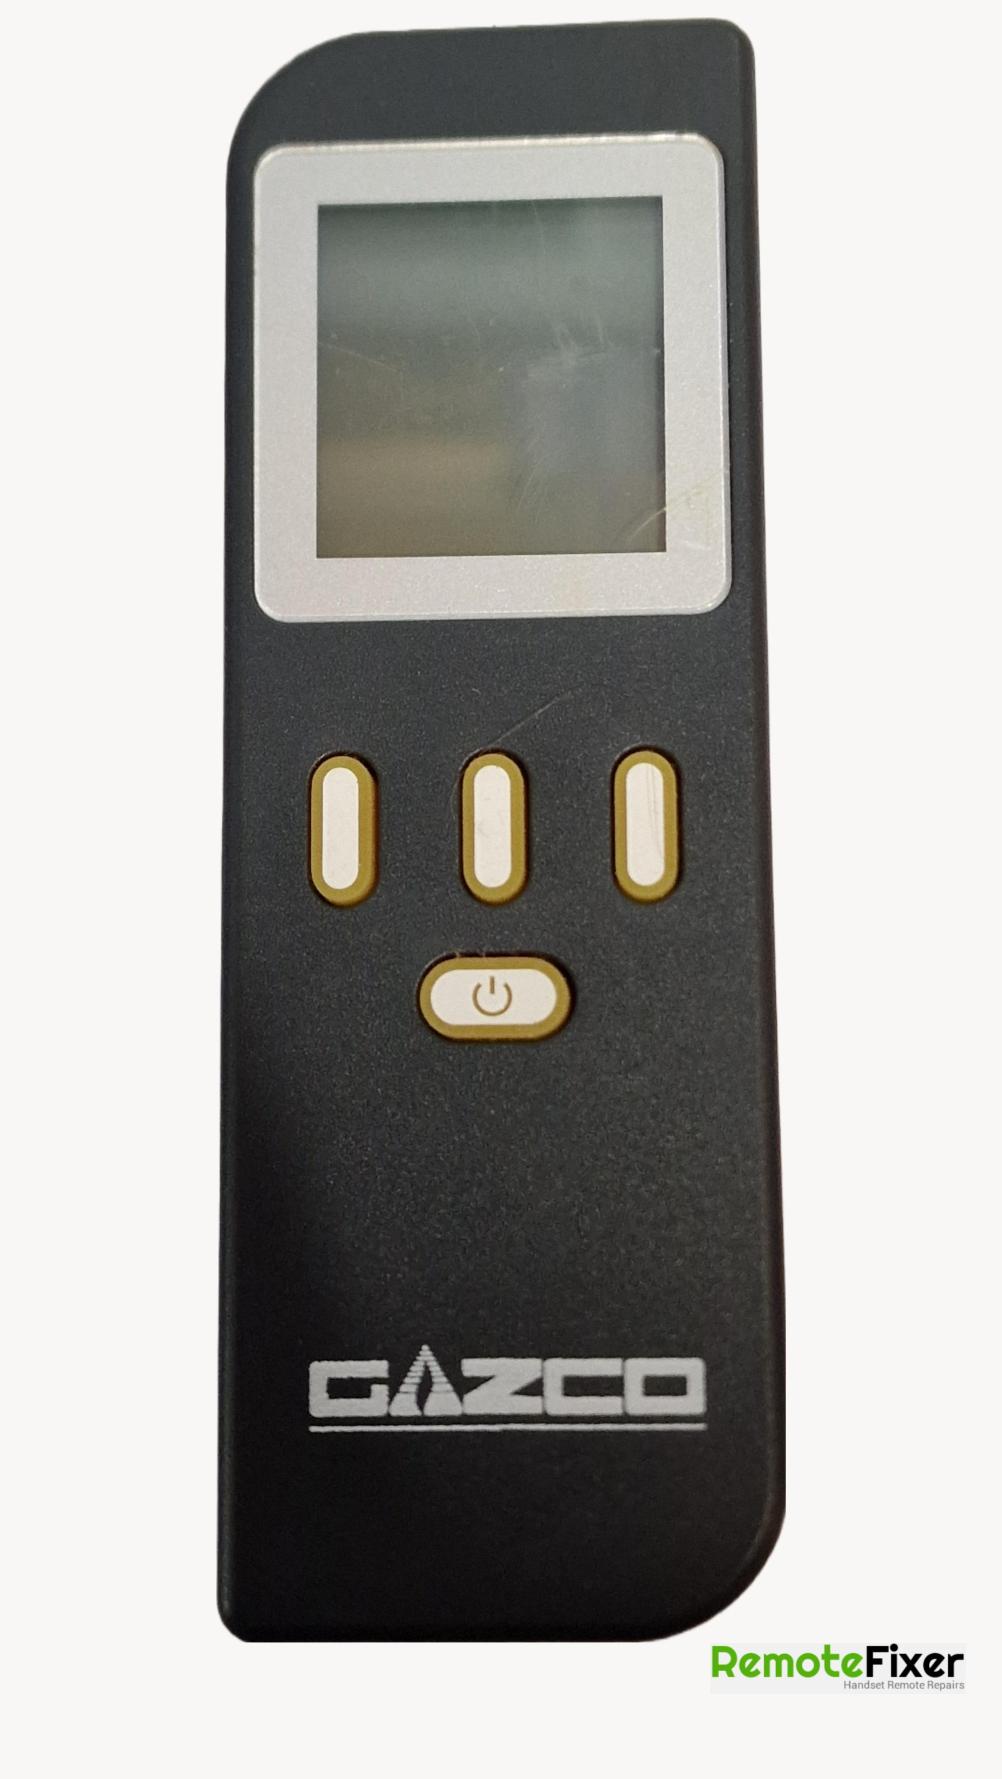 Gazco Riva 2 Remote Control - Front Image